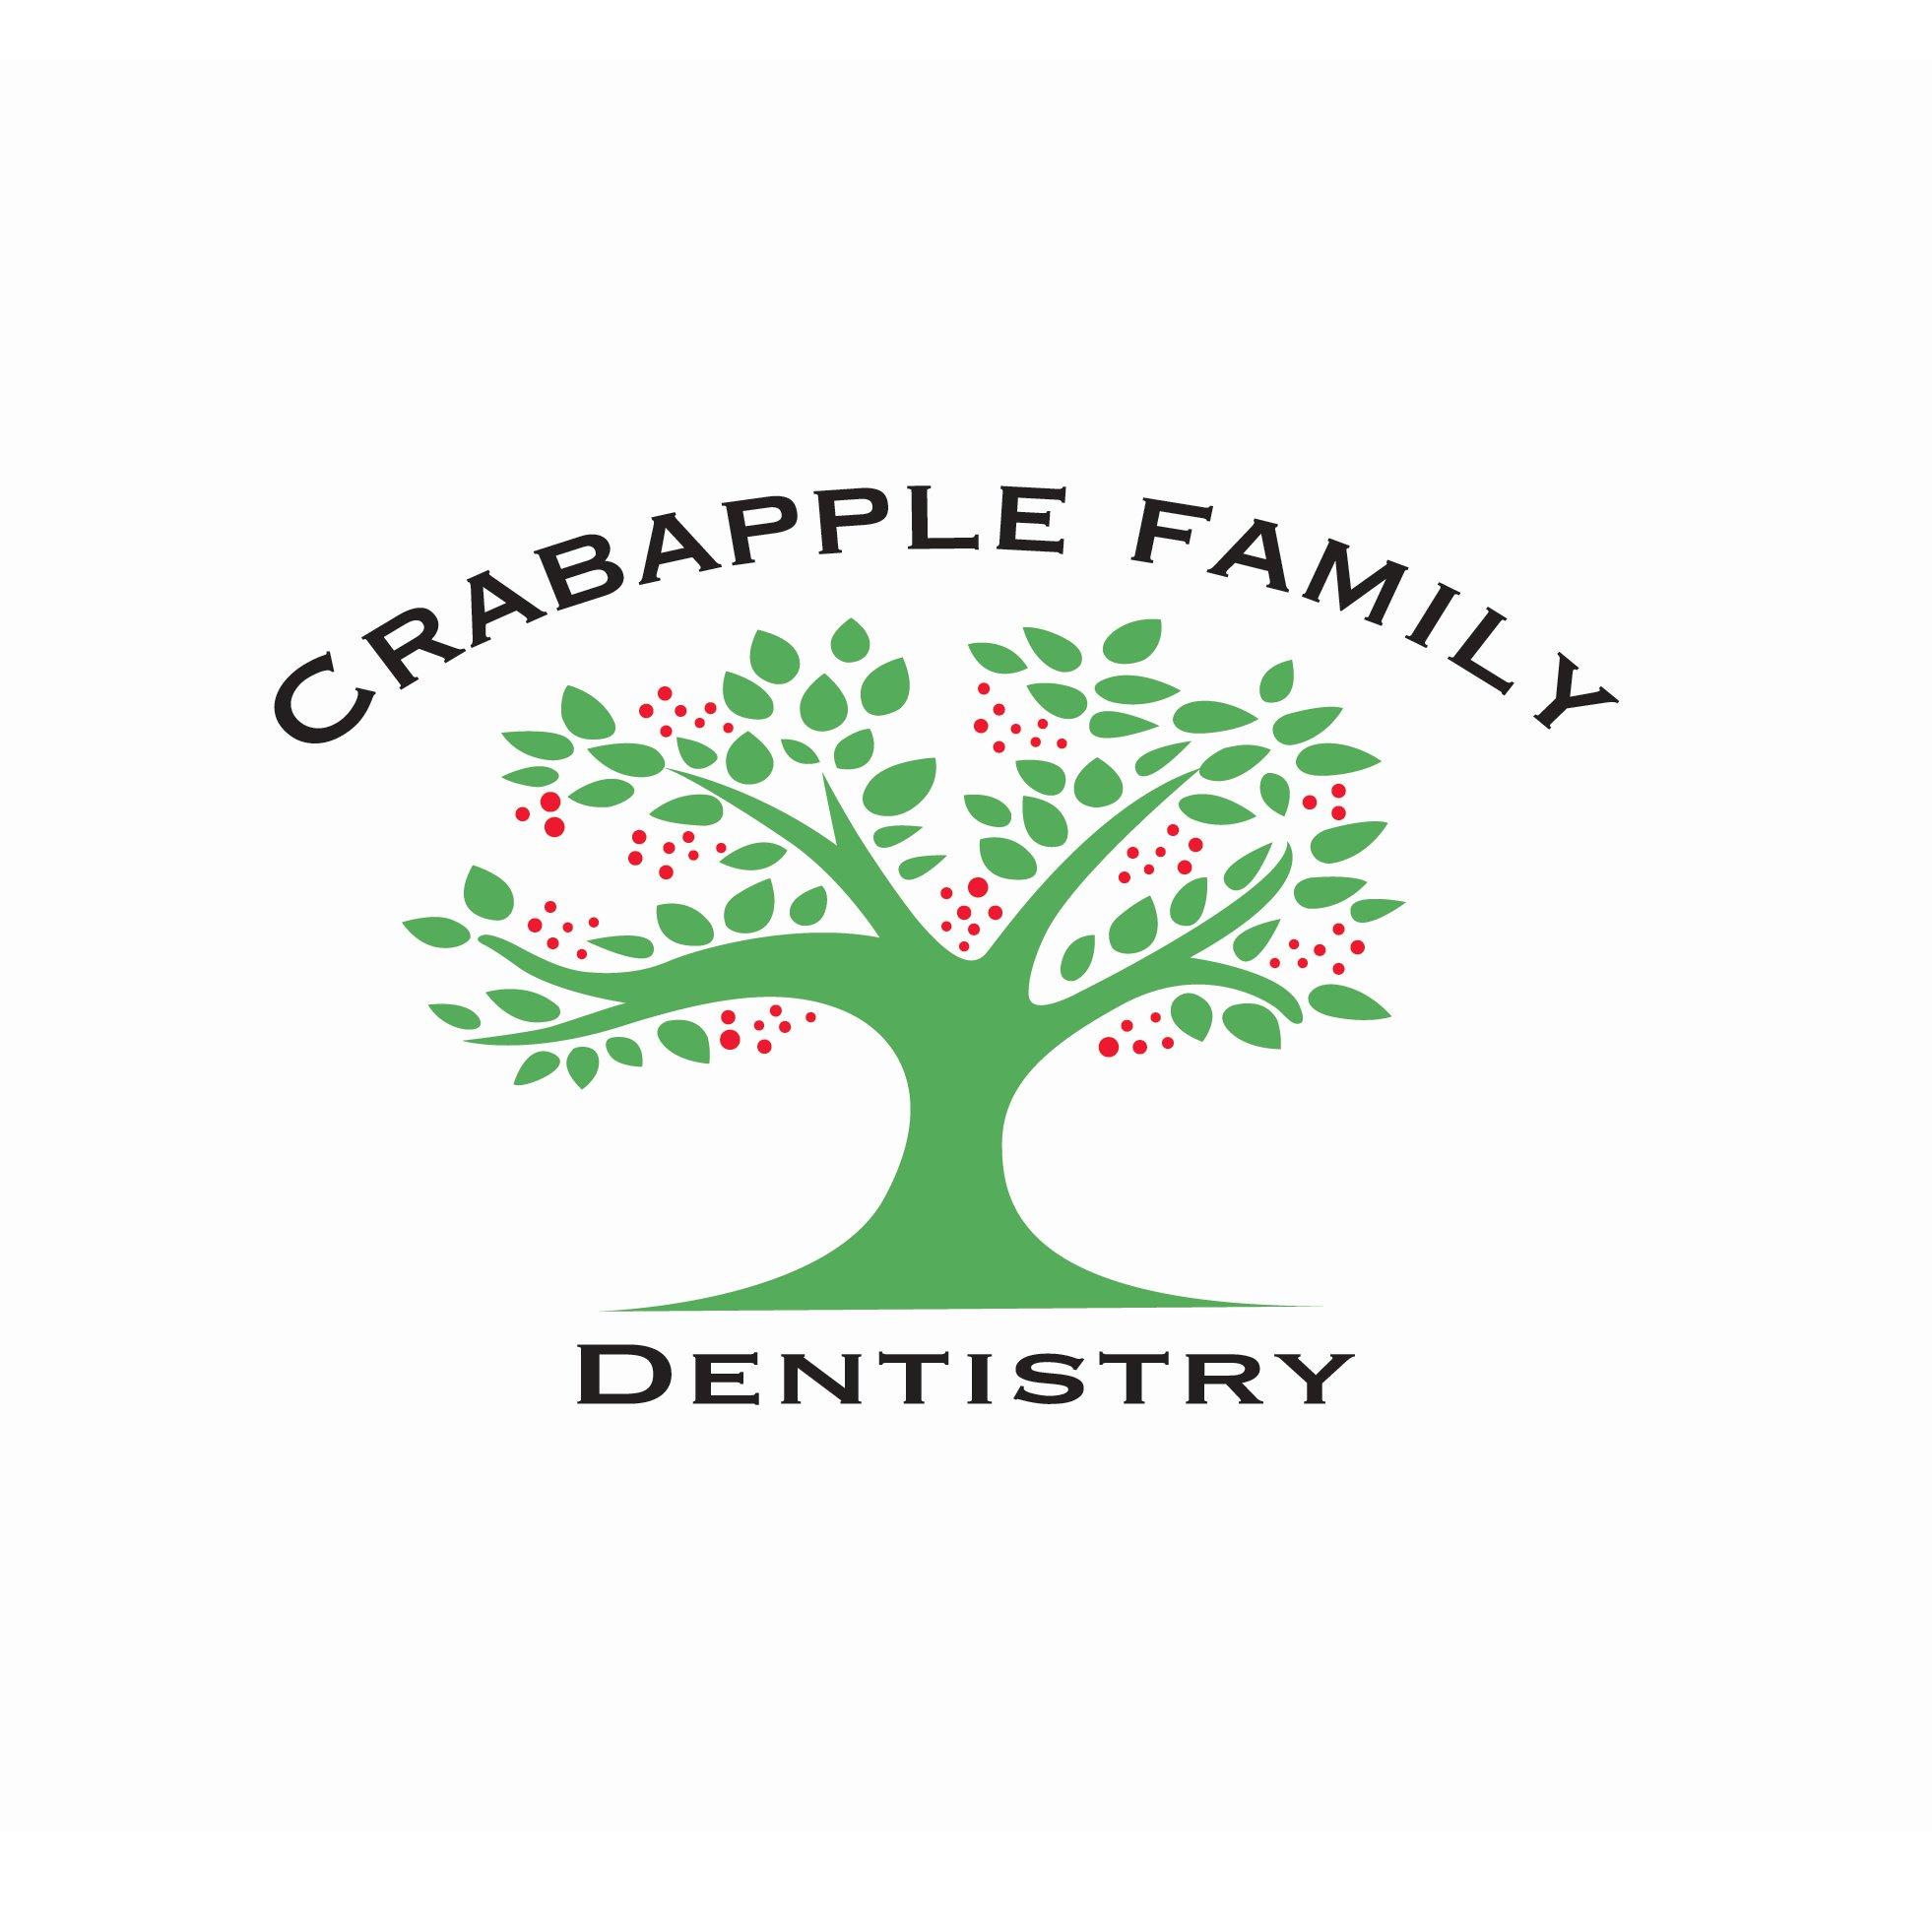 Crabapple Family Dentistry